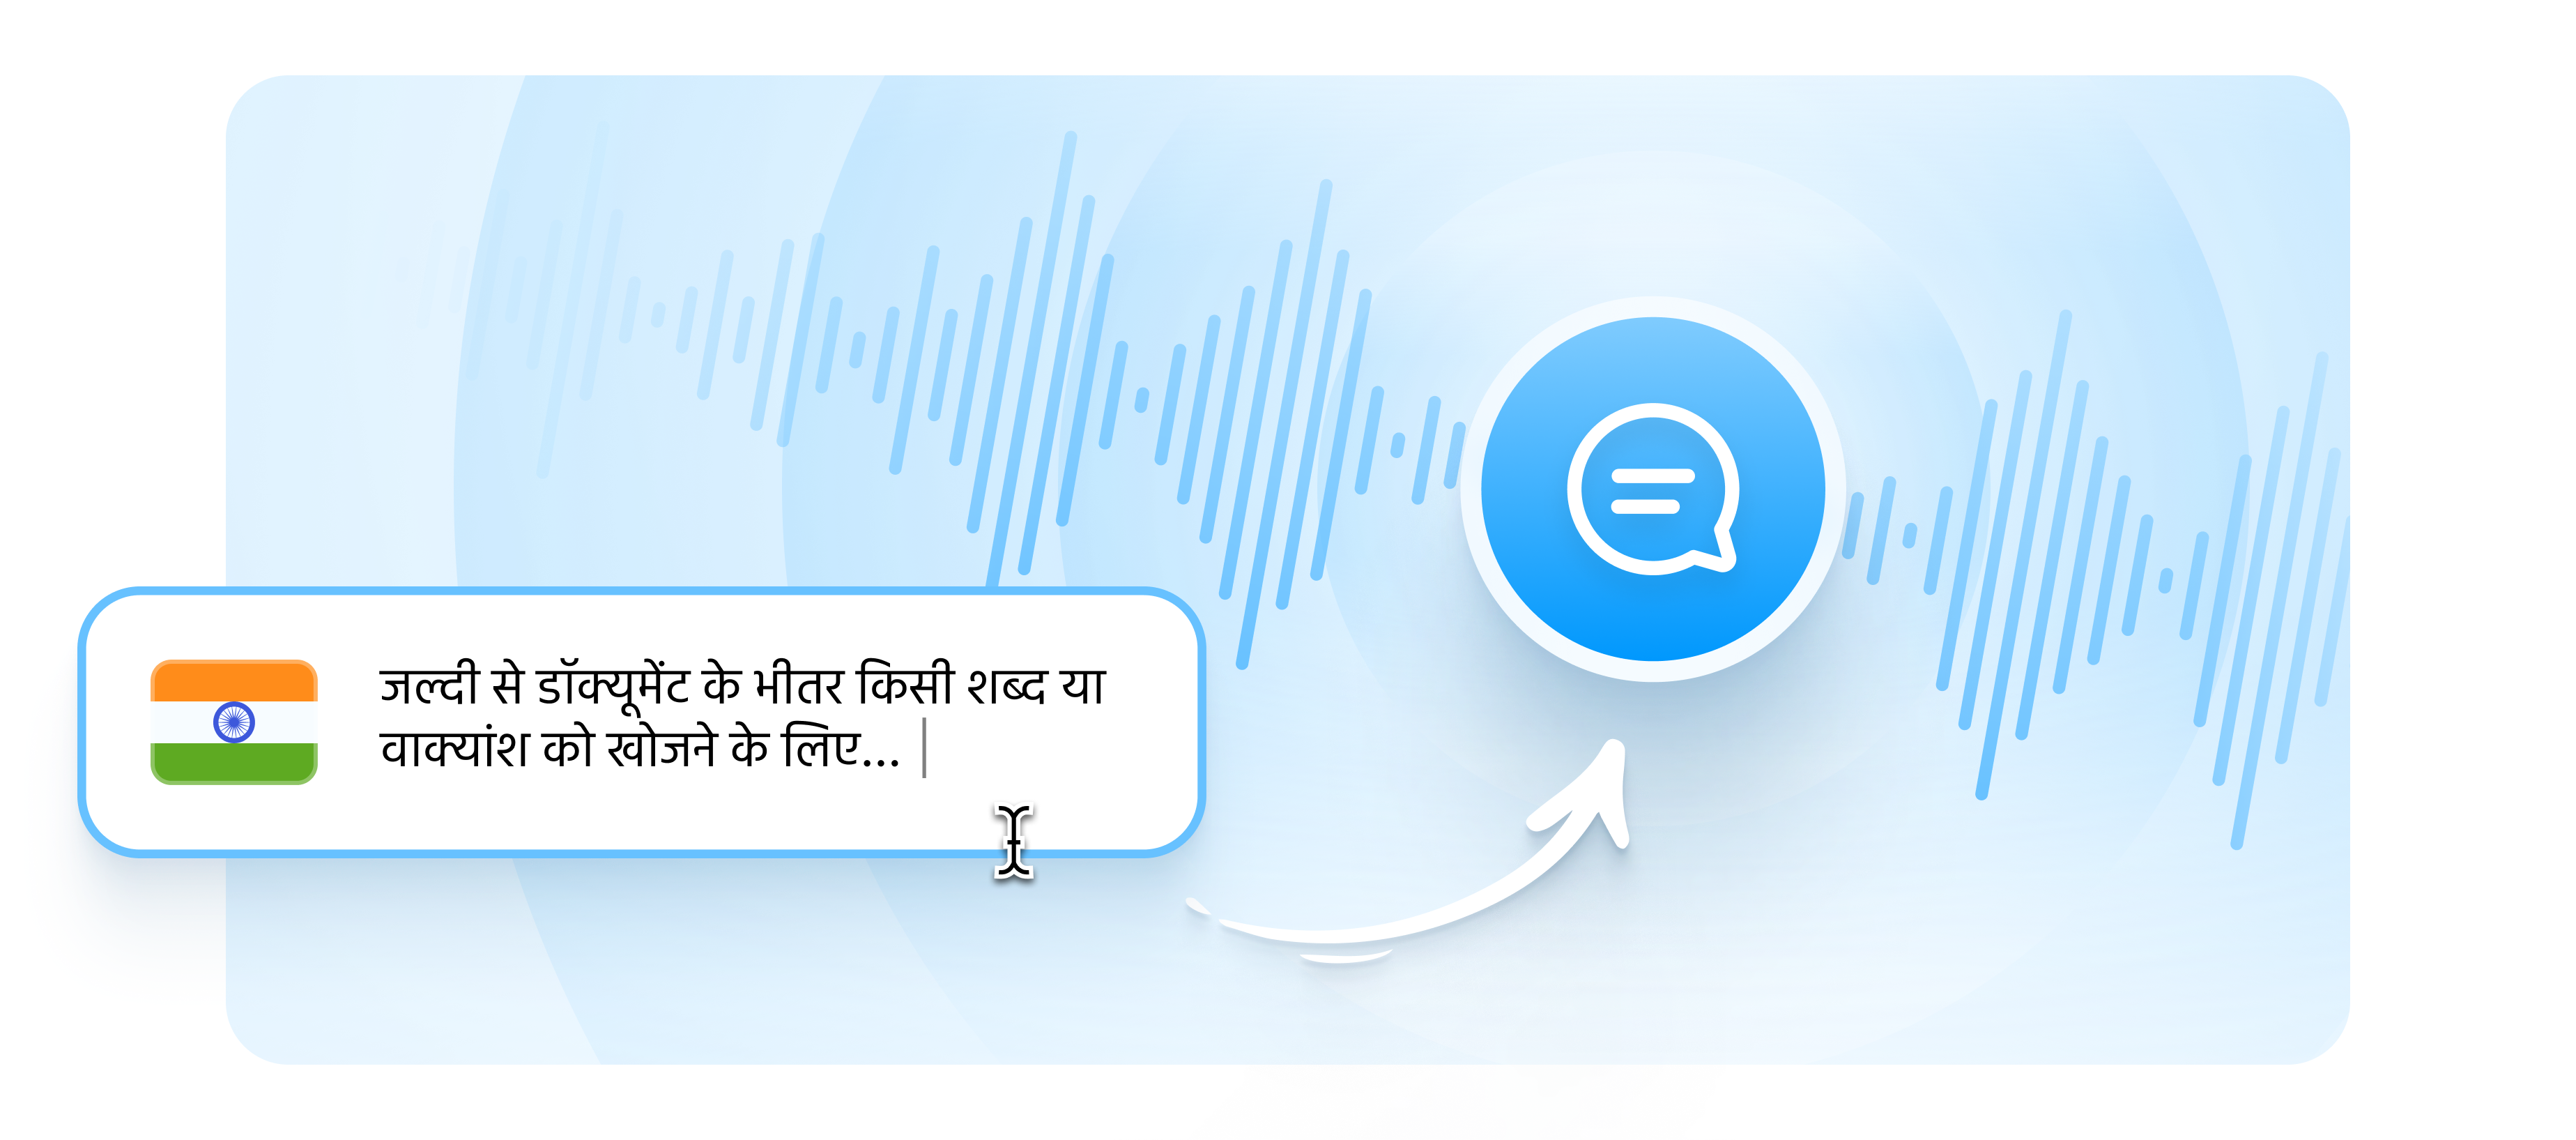 text to speech hindi type